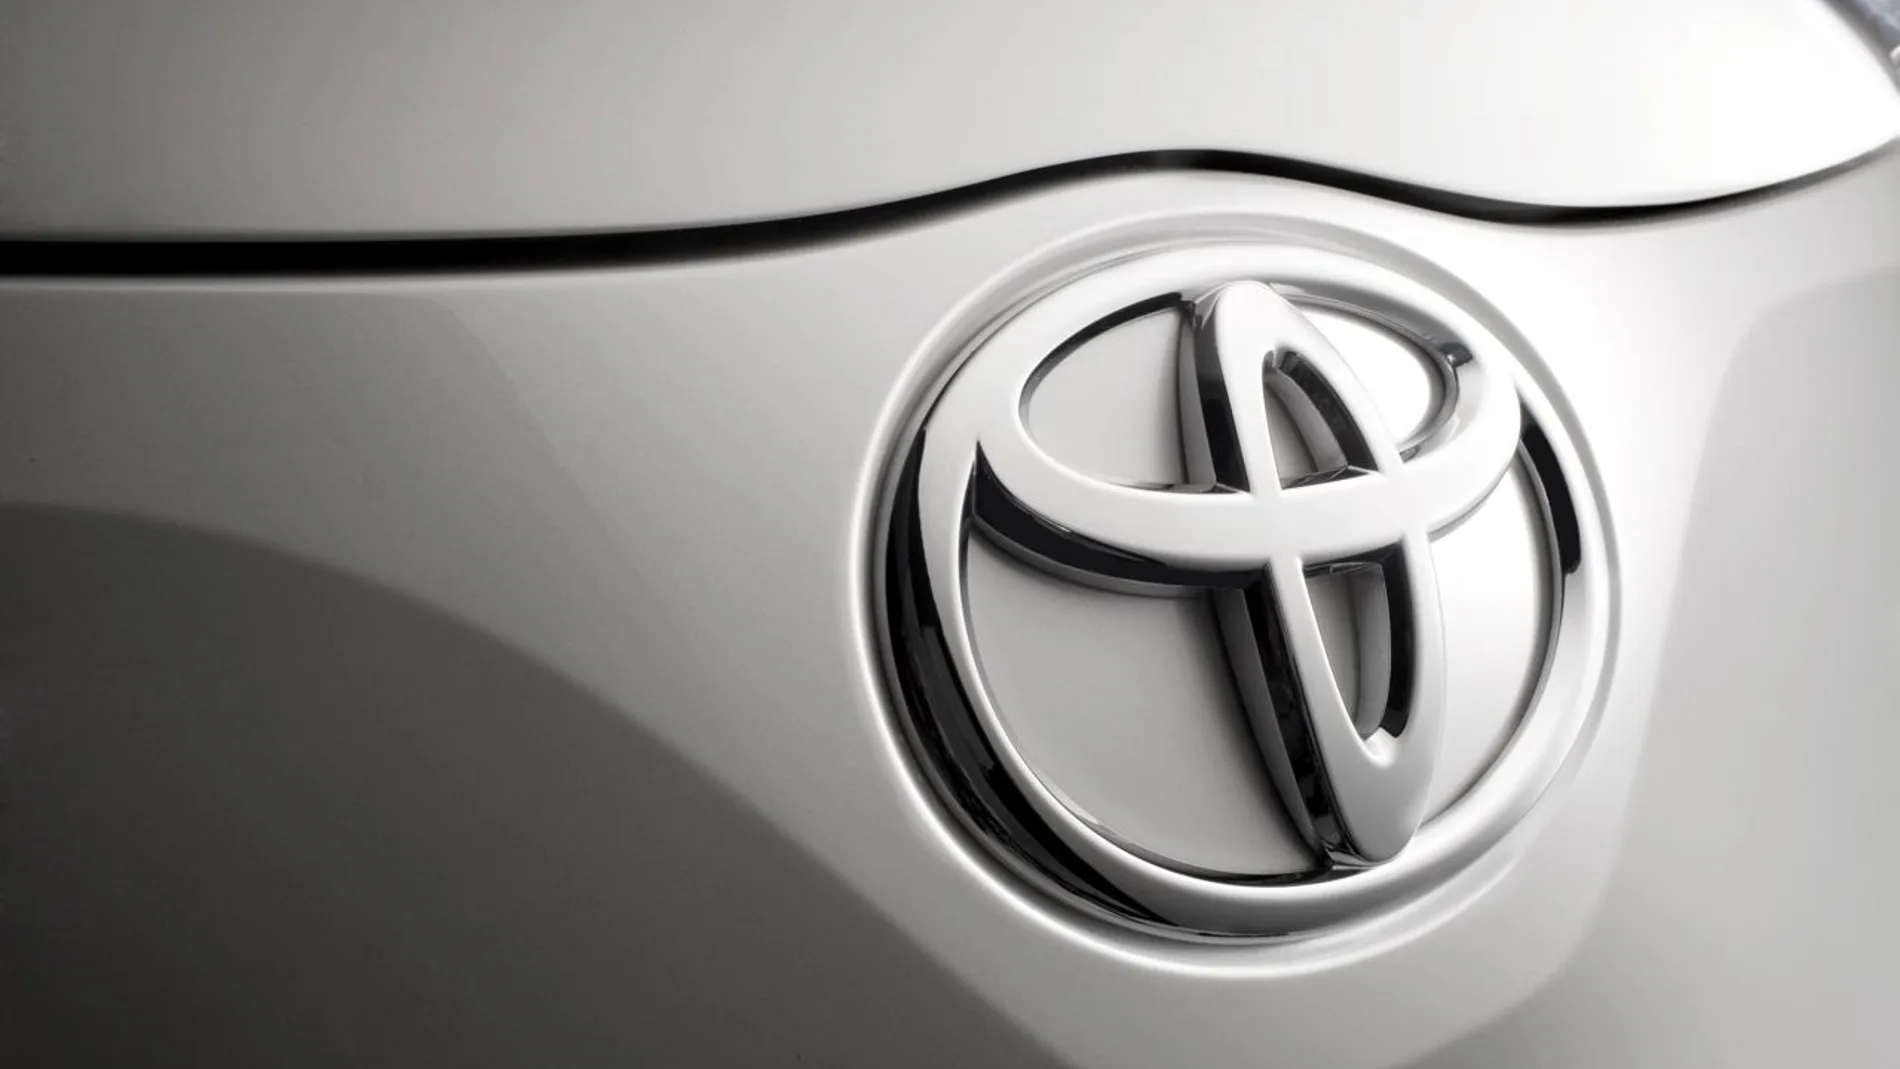 Toyota llama a revisión a más de 6 millones de vehículos en todo el mundo